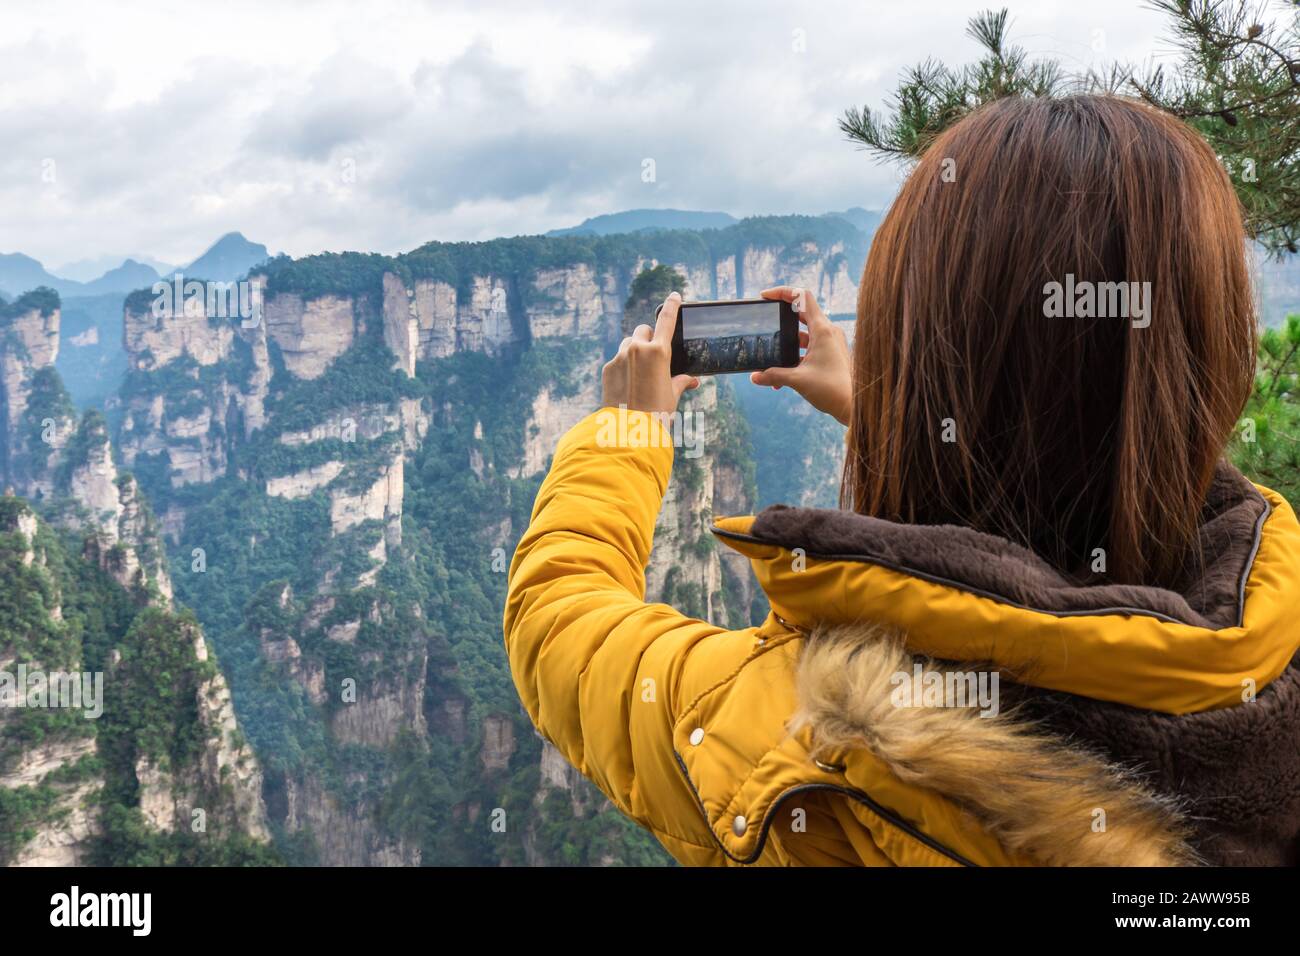 Ragazza turistica asiatica scattare una foto utilizzando uno smartphone al Parco Nazionale della Foresta di Zhangjiajie, sito Patrimonio dell'Umanità dell'UNESCO, Wulingyuan, Hunan, Cina Foto Stock